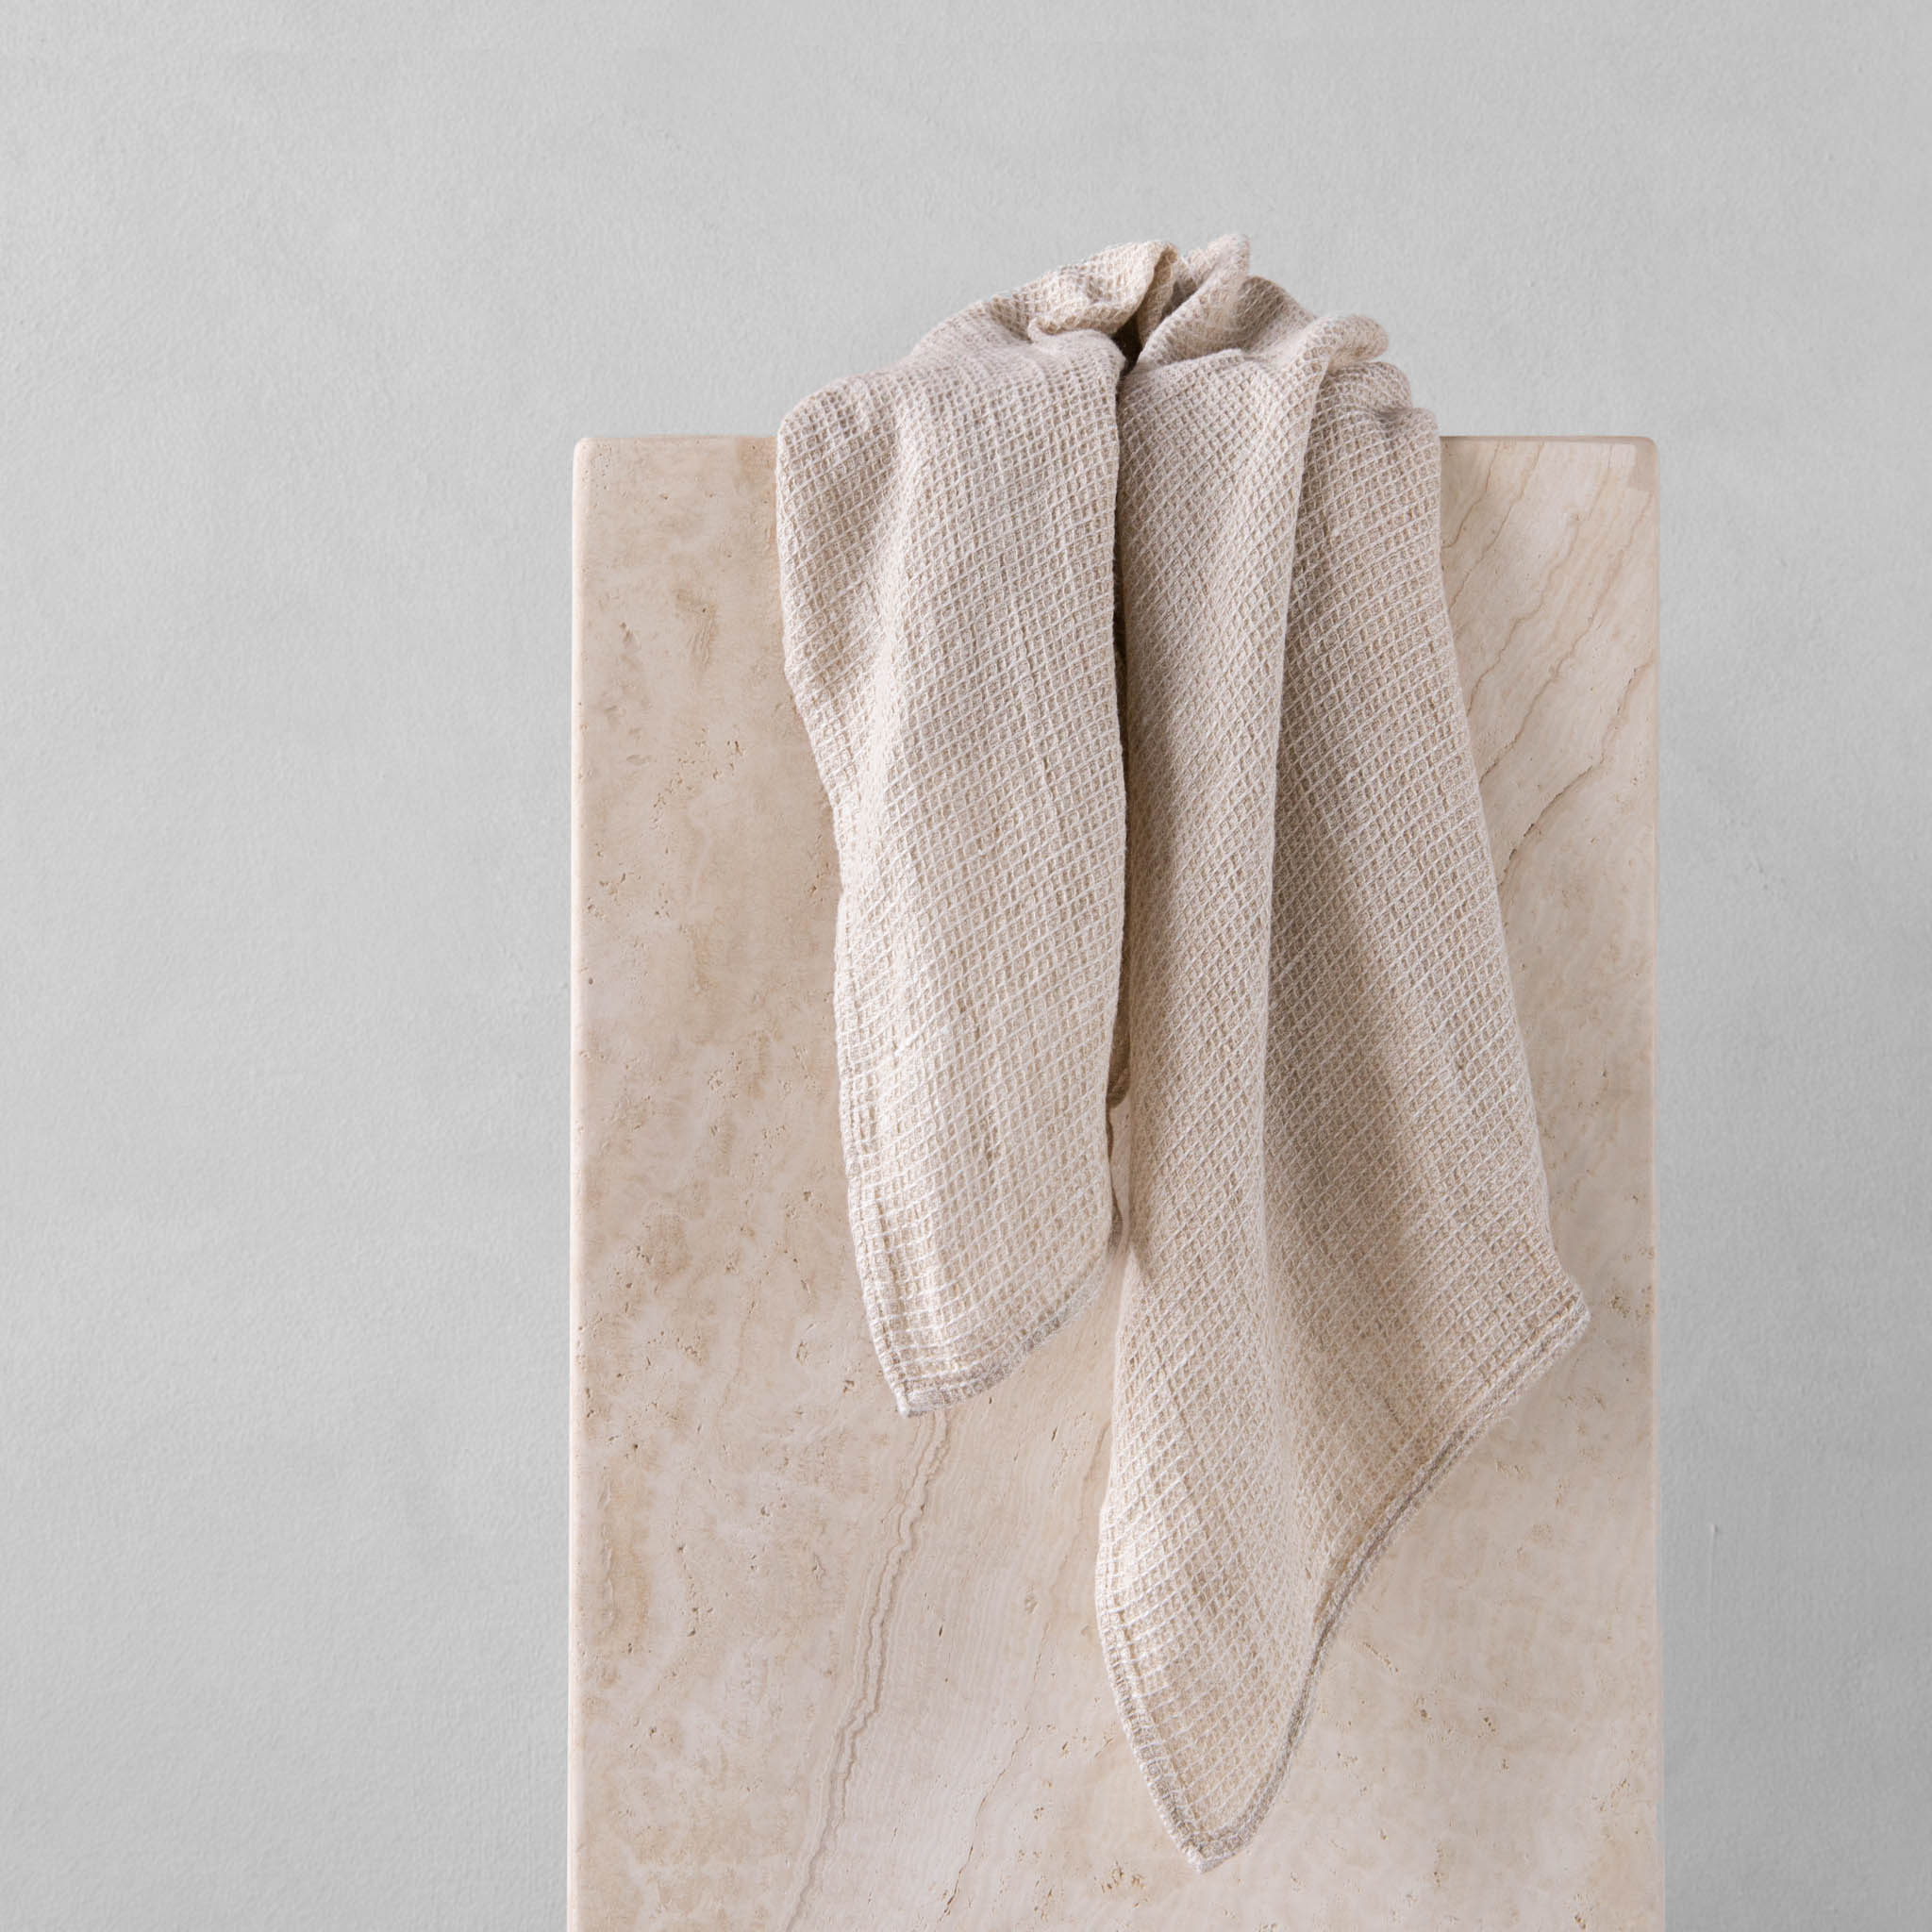 Linen Tea Towels | Antique White | Hale Mercantile Co.